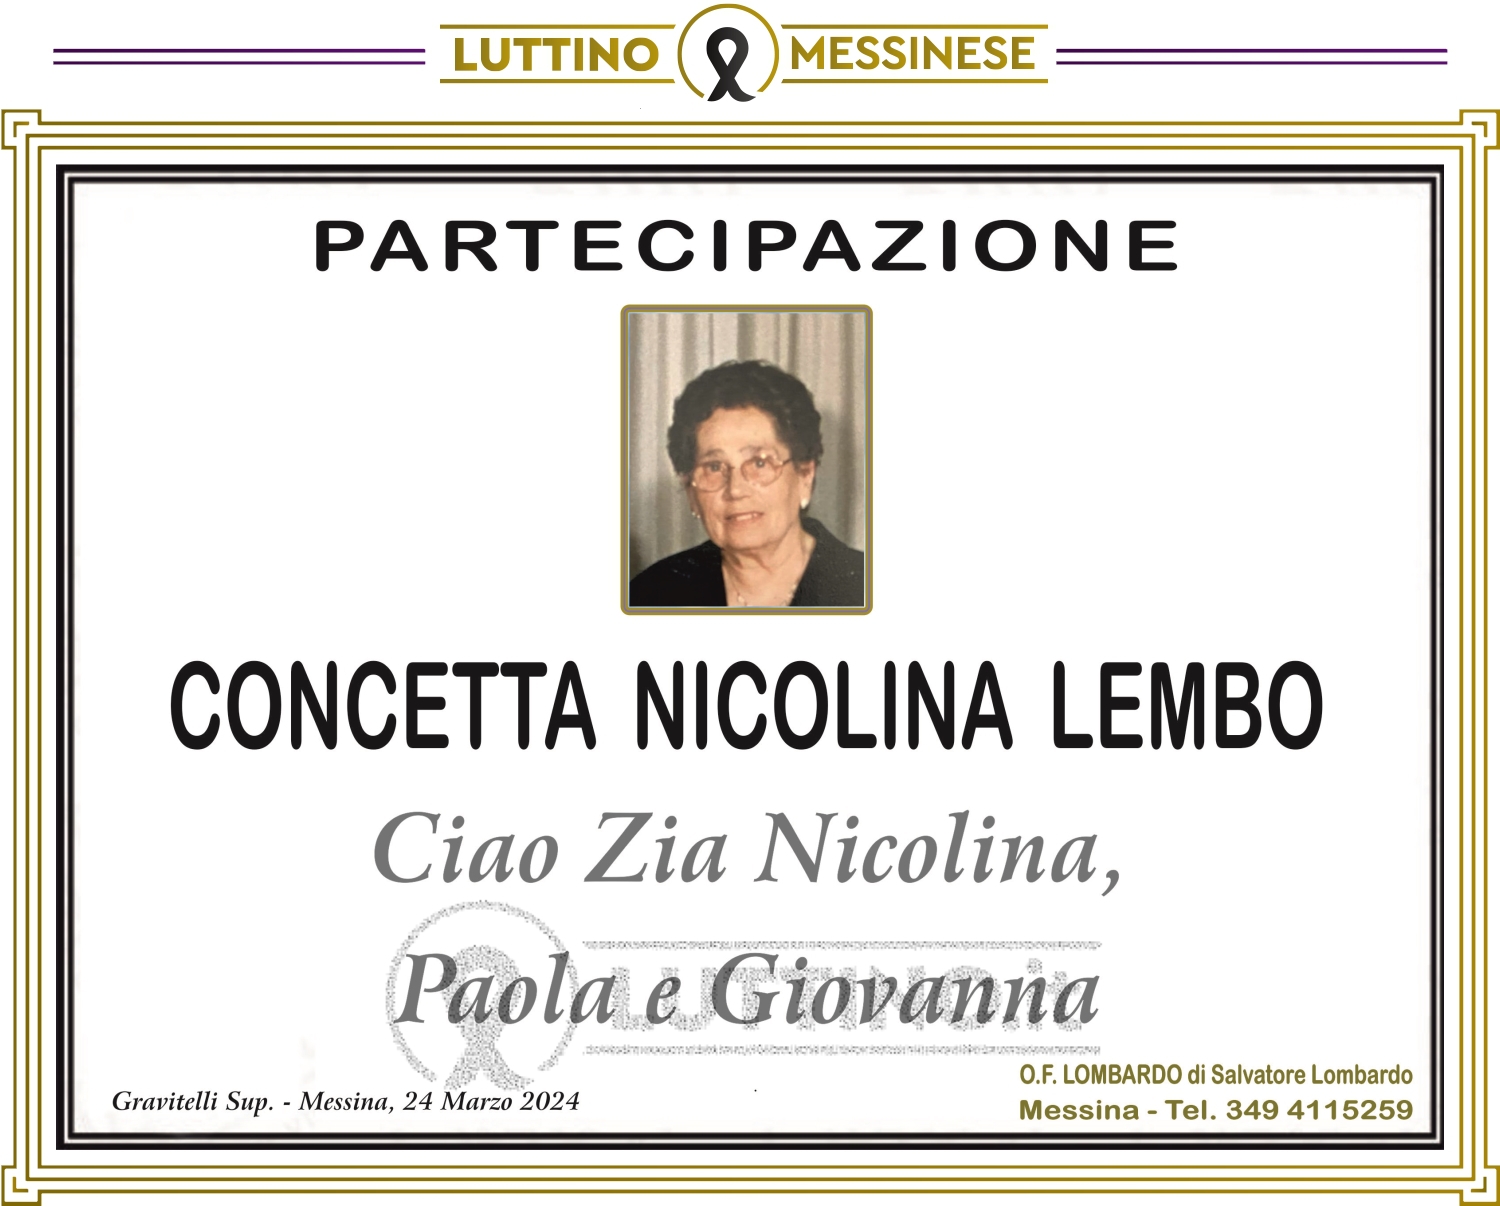 Concetta Nicolina Lembo